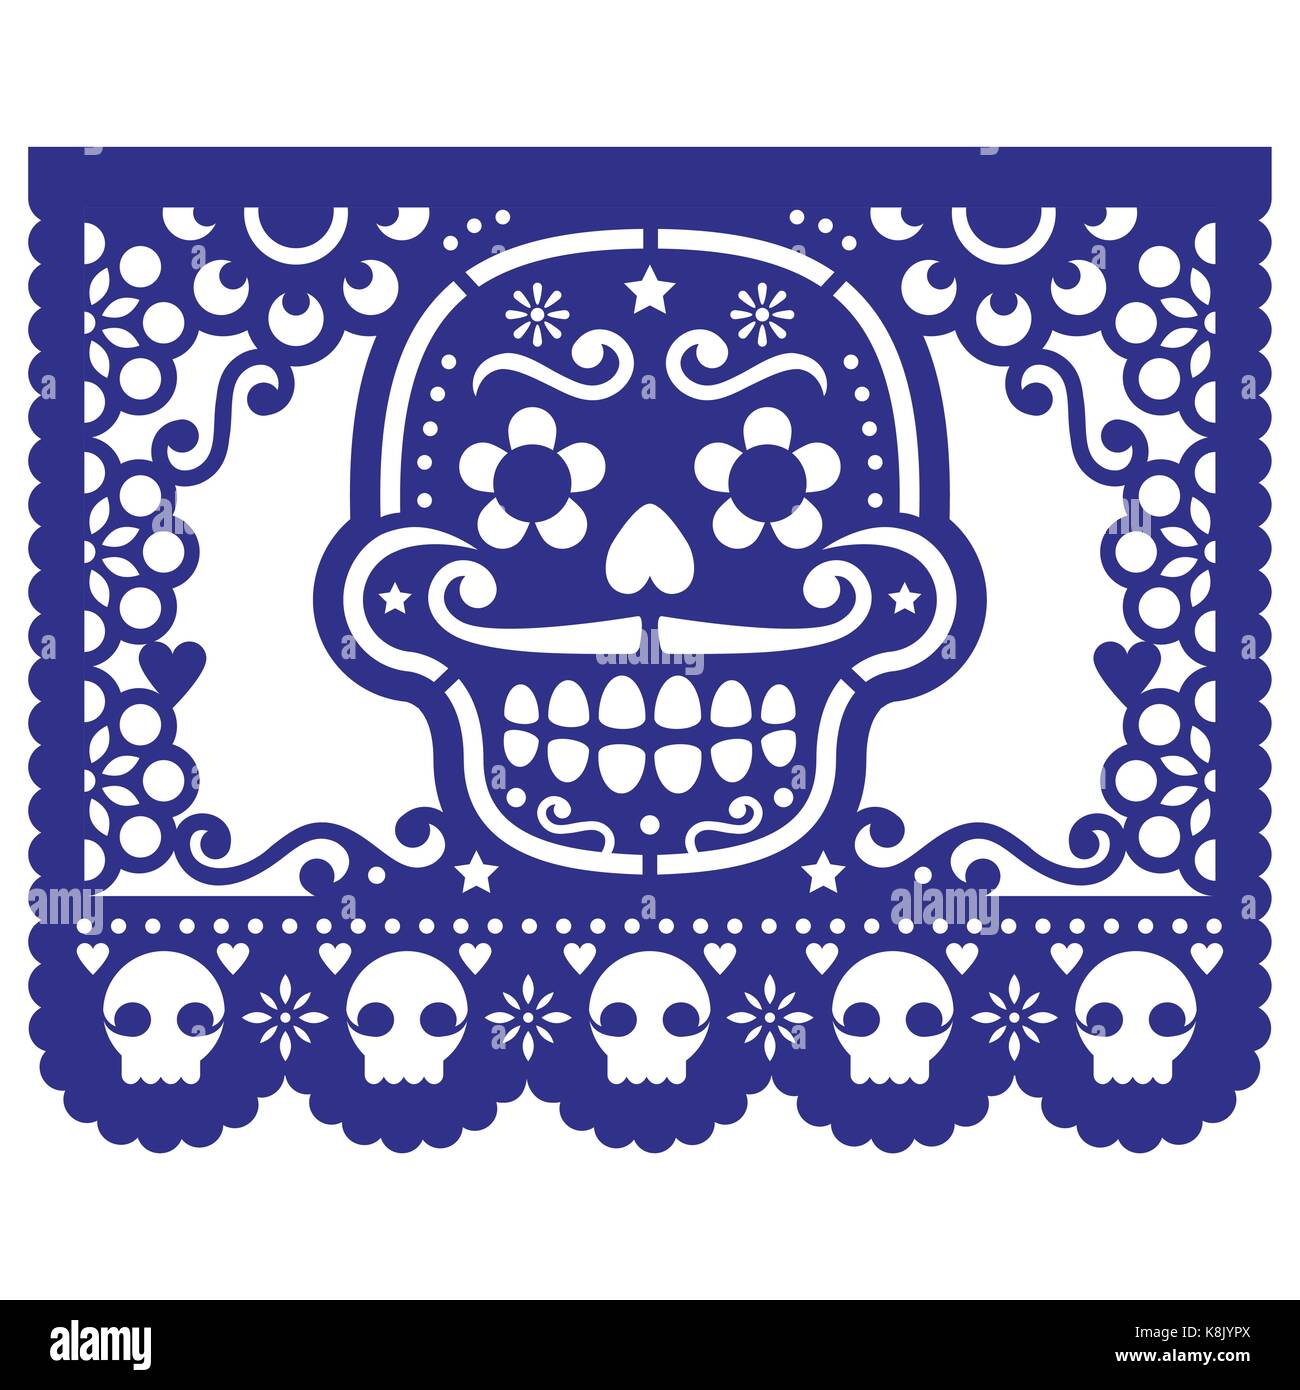 Halloween, Fête des Morts avec des crânes - Mexican papel picado décoration avec des fleurs et des formes géométriques Illustration de Vecteur